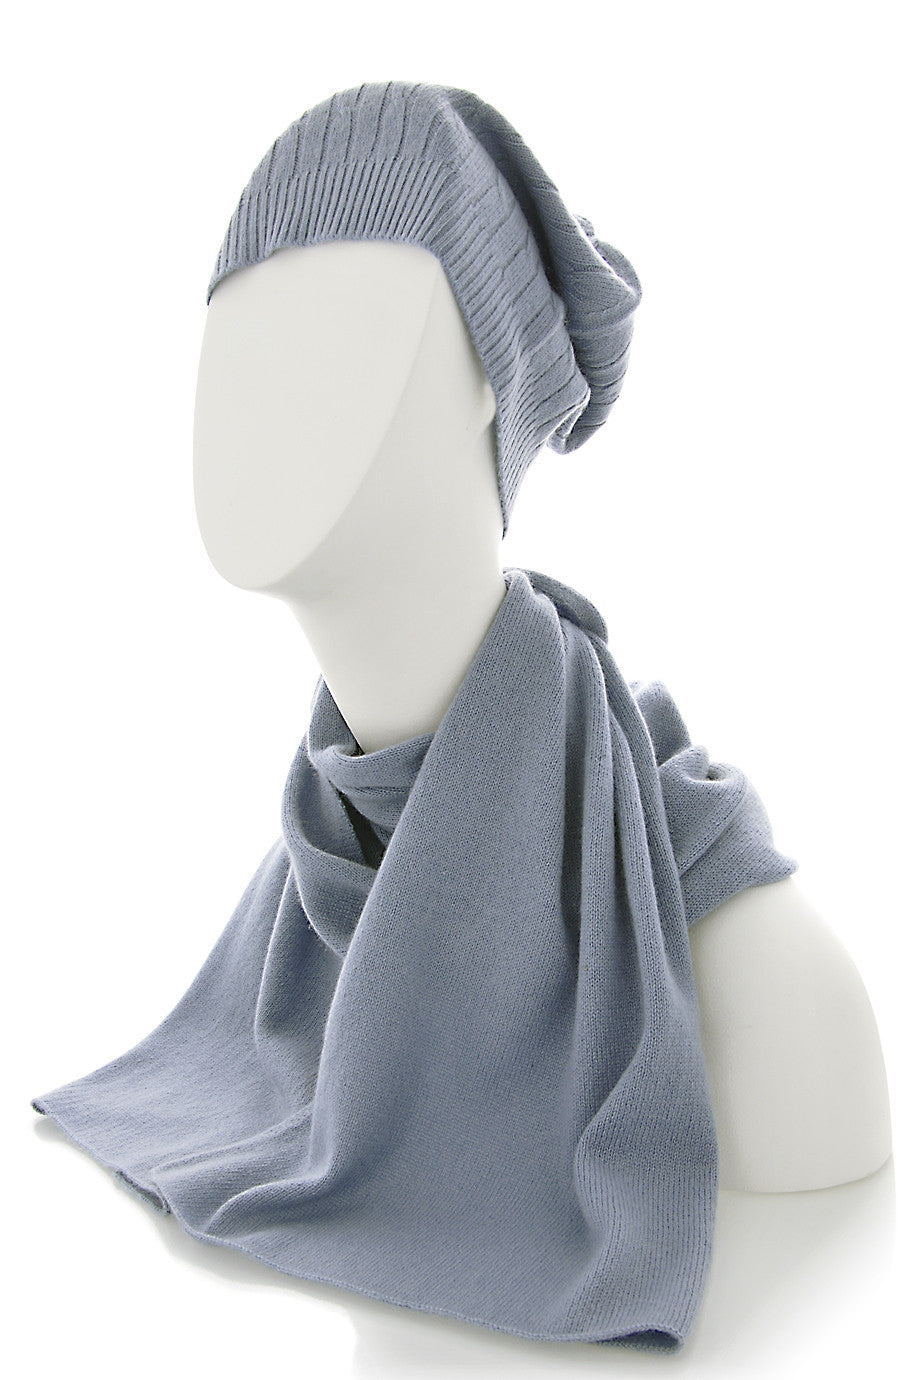 NEPAL grijs blauwe kasjmier sjaal